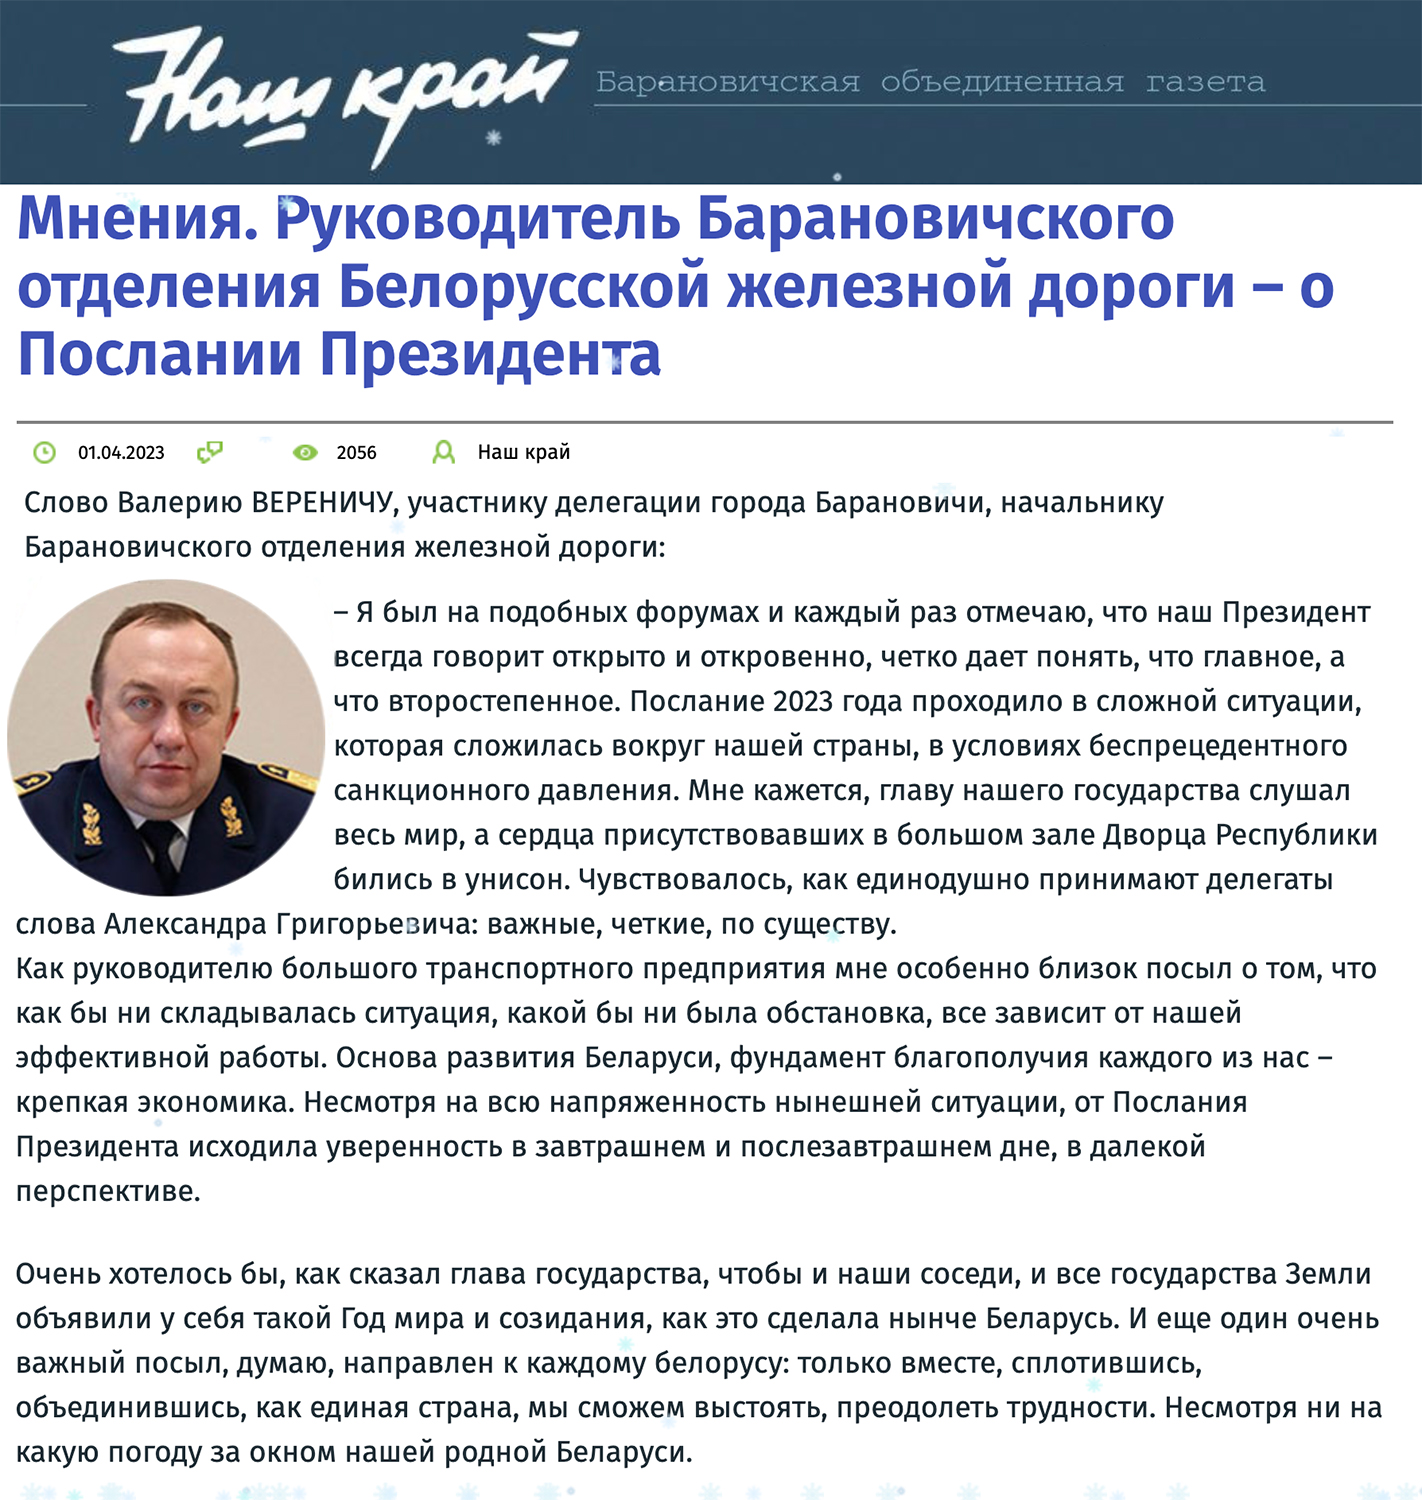 Заявление В. Веренича о Послании так называемого президента Беларуси в 2023 году